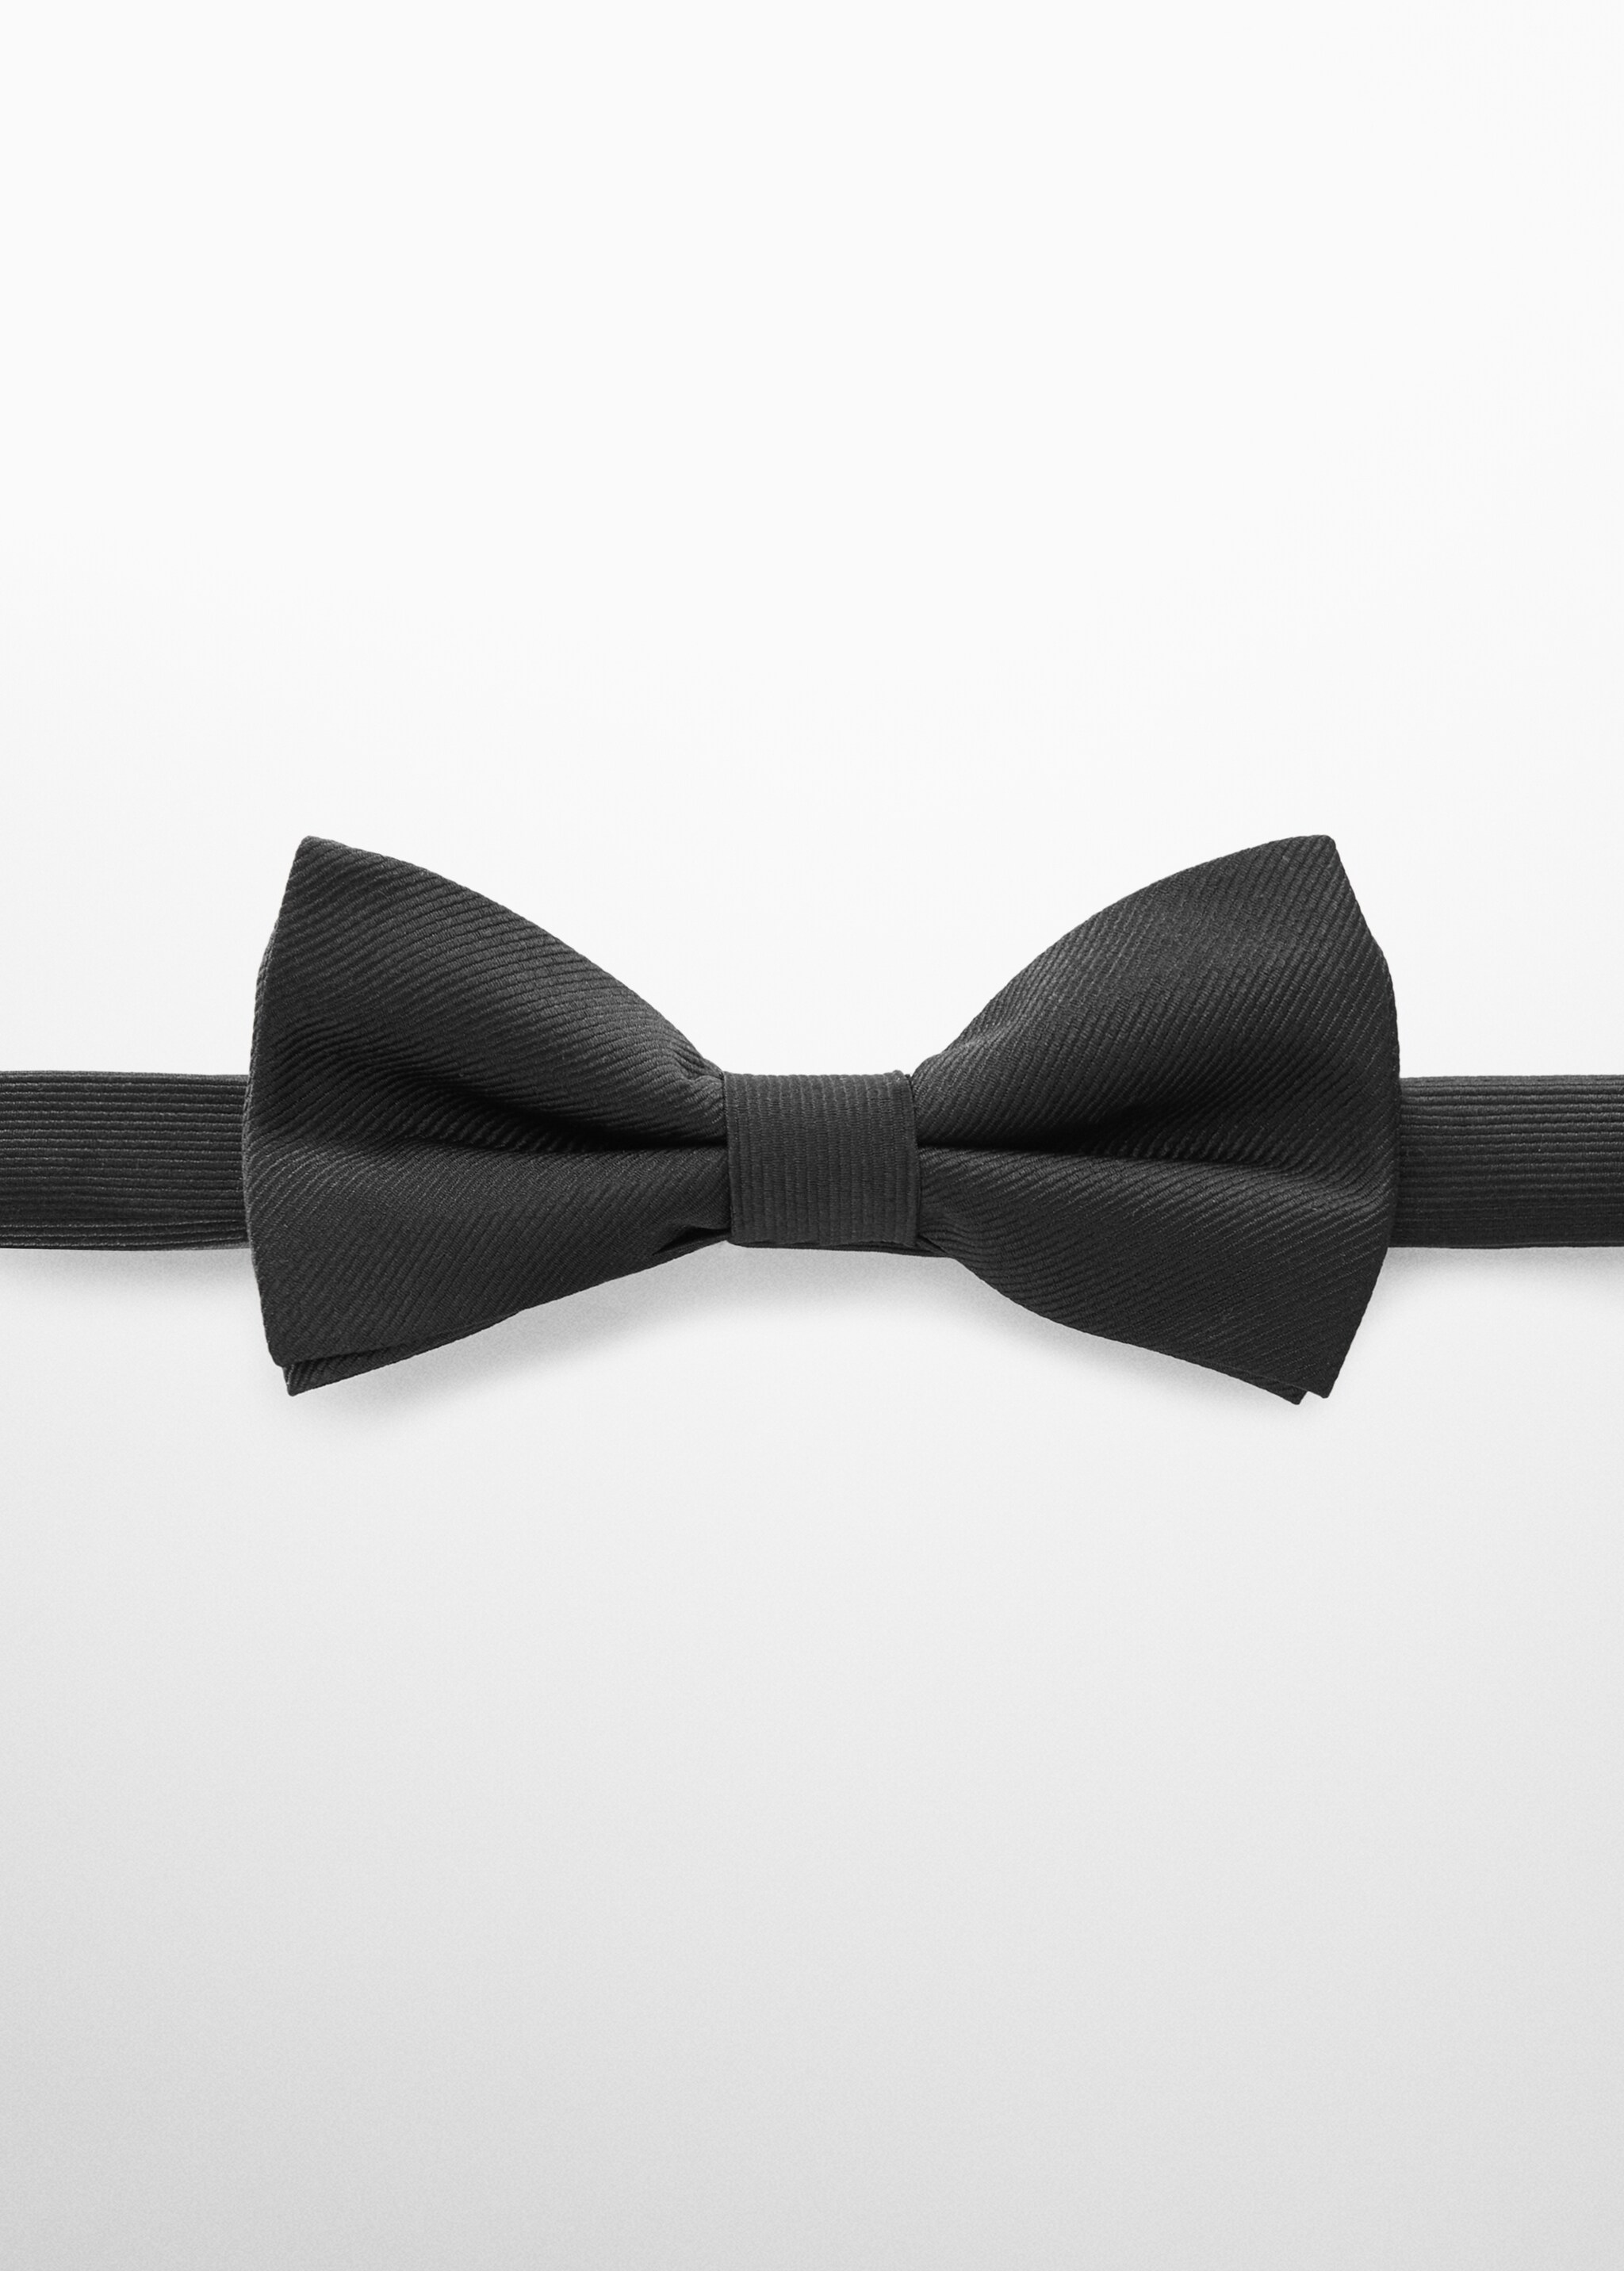 ربطة عنق فراشية بنسيج محكم - منتج دون نموذج